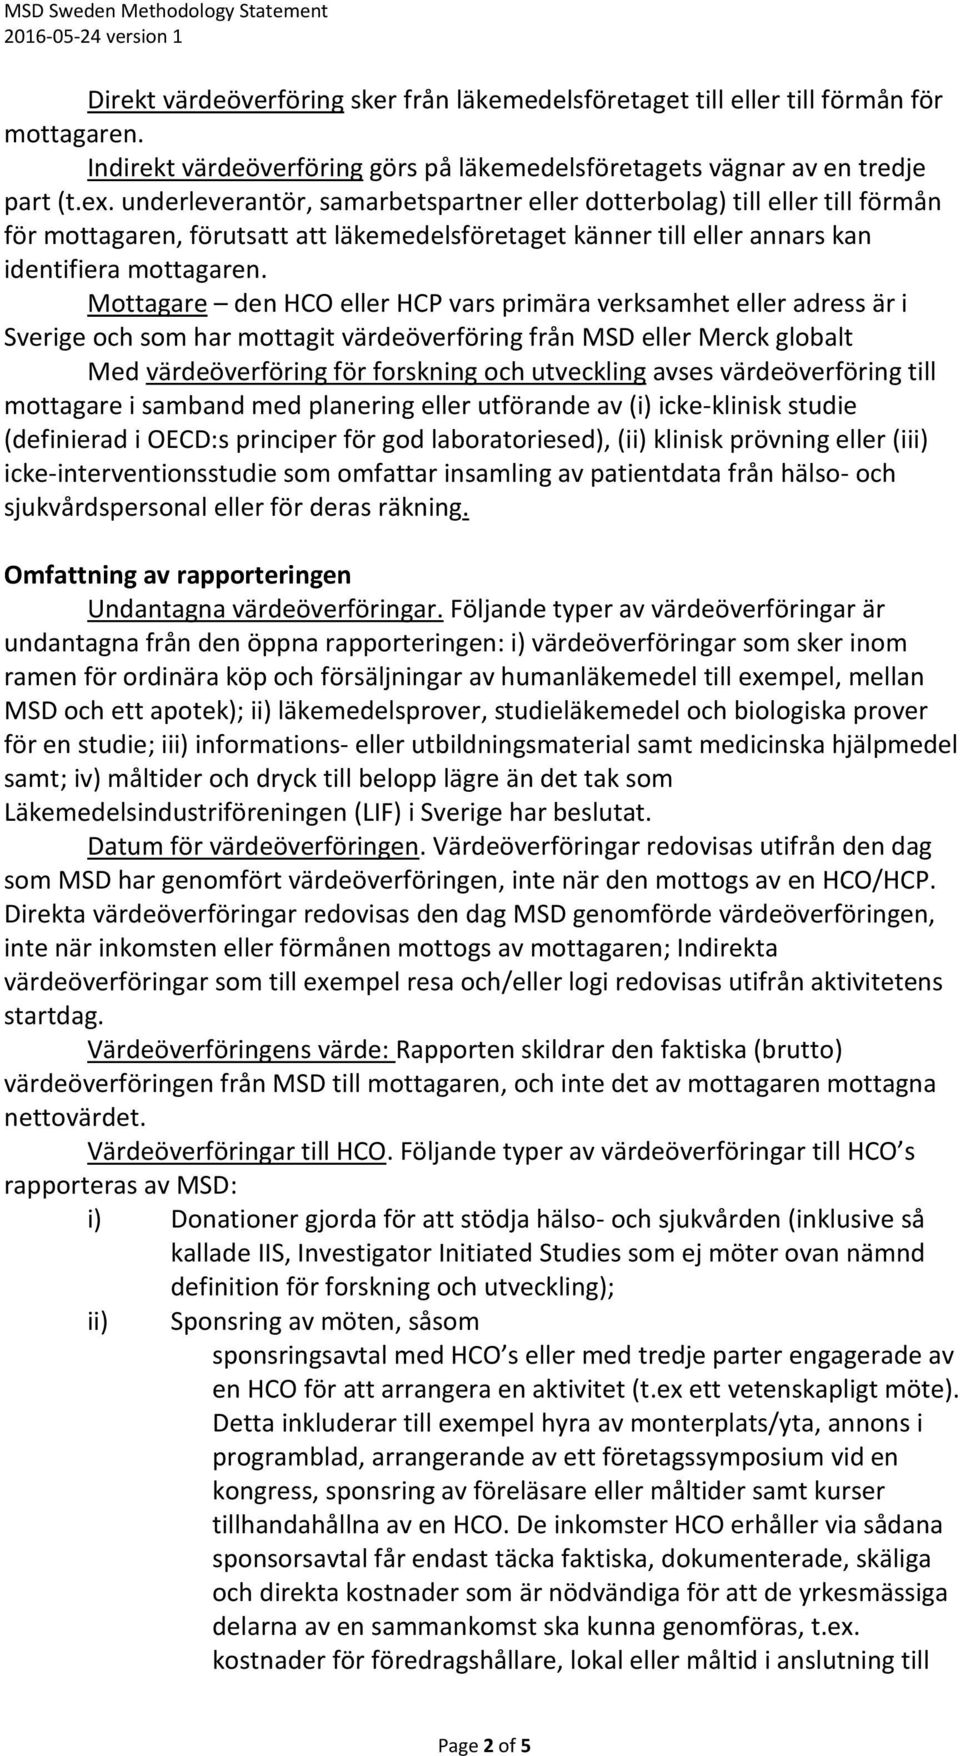 Mottagare den HCO eller HCP vars primära verksamhet eller adress är i Sverige och som har mottagit värdeöverföring från MSD eller Merck globalt Med värdeöverföring för forskning och utveckling avses